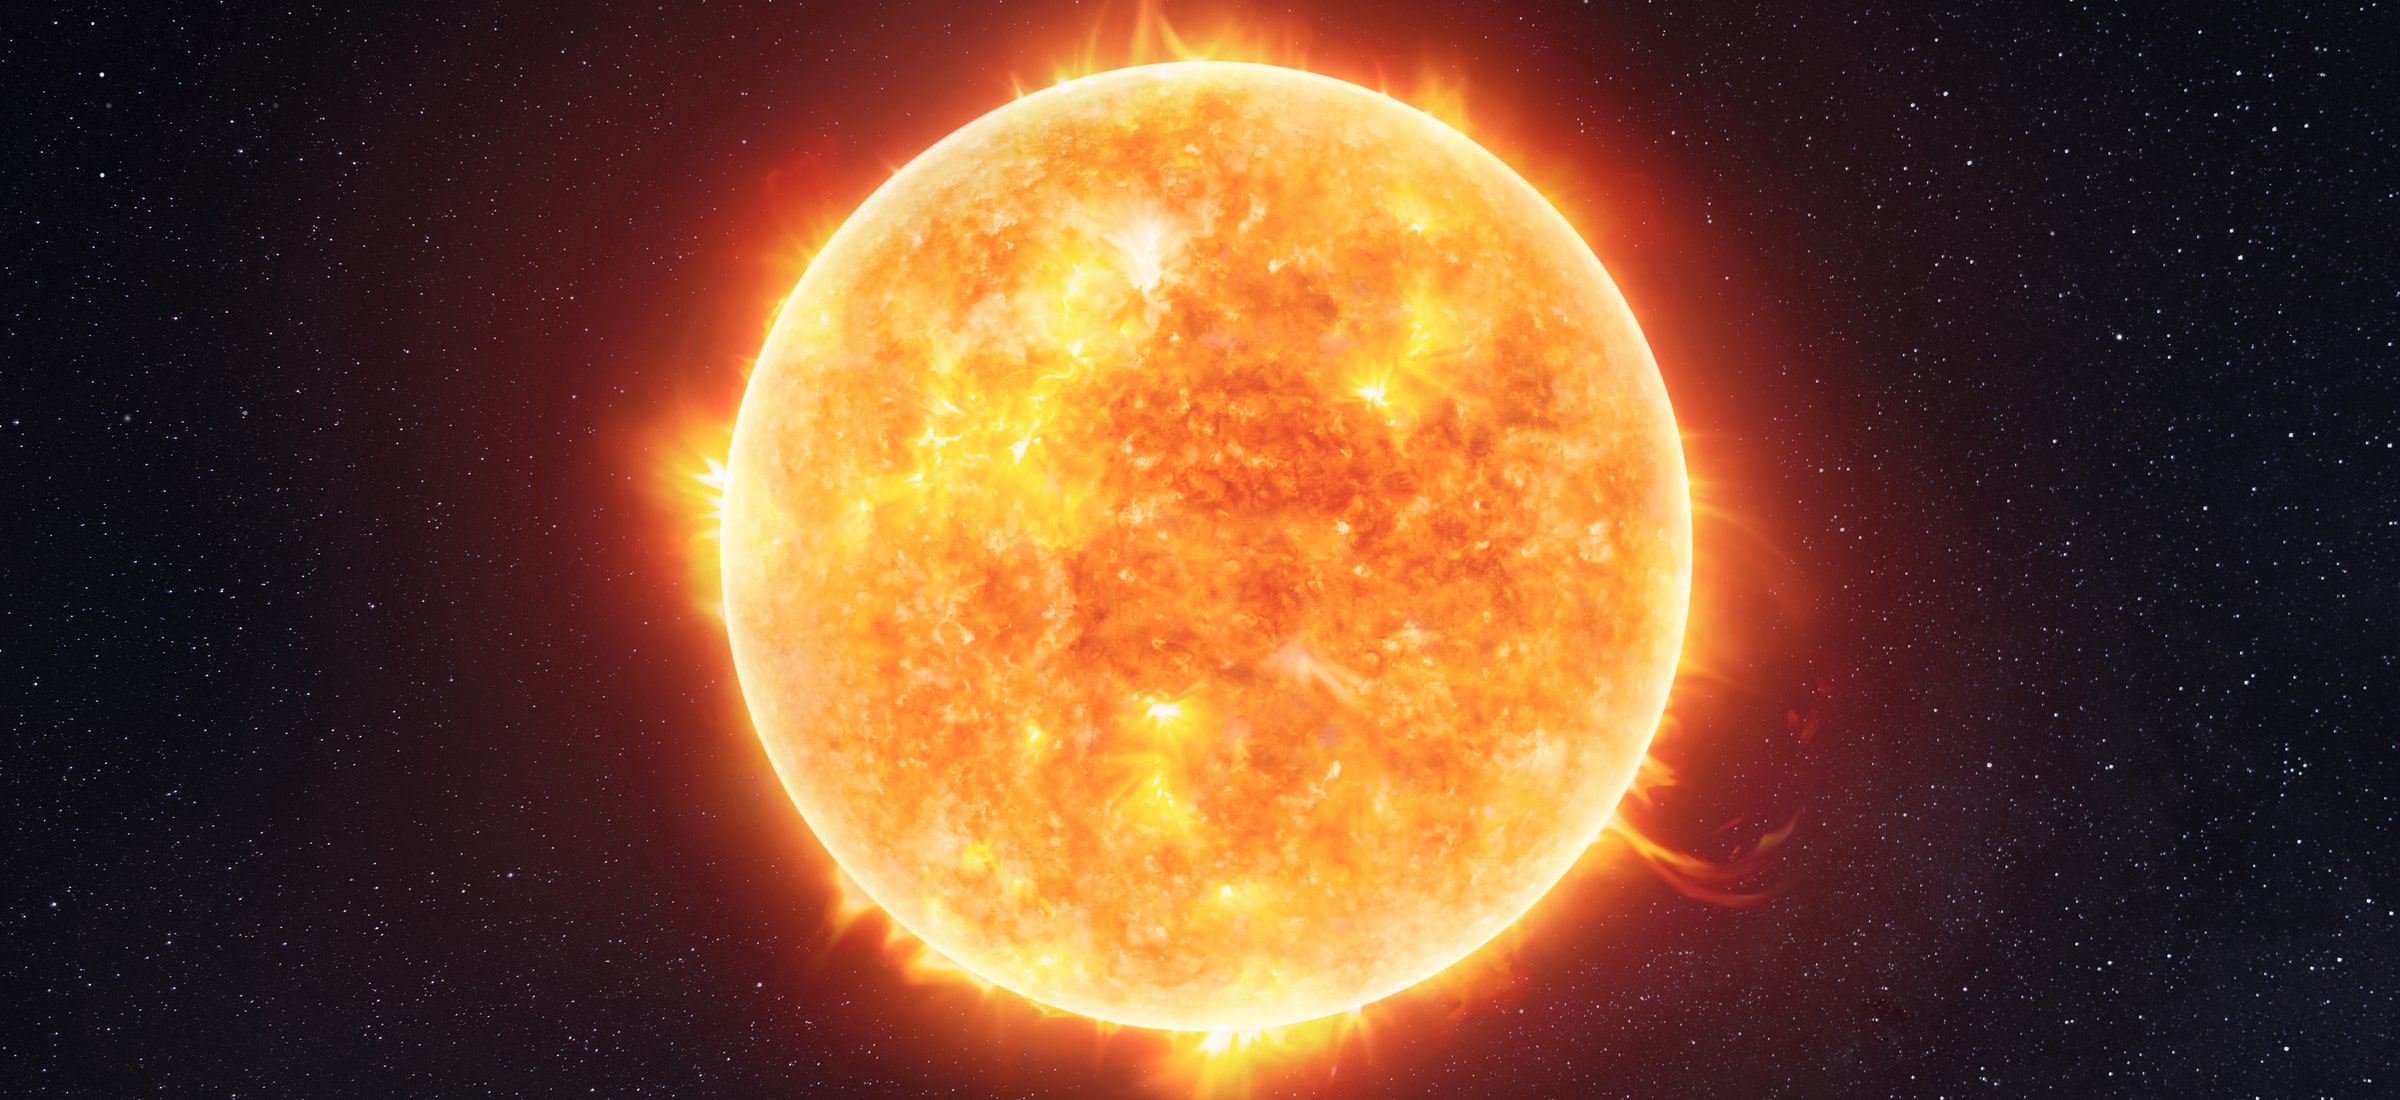 AR 3038 to najnowsza plama słoneczna, która pojawiła się na powierzchni Słońca.